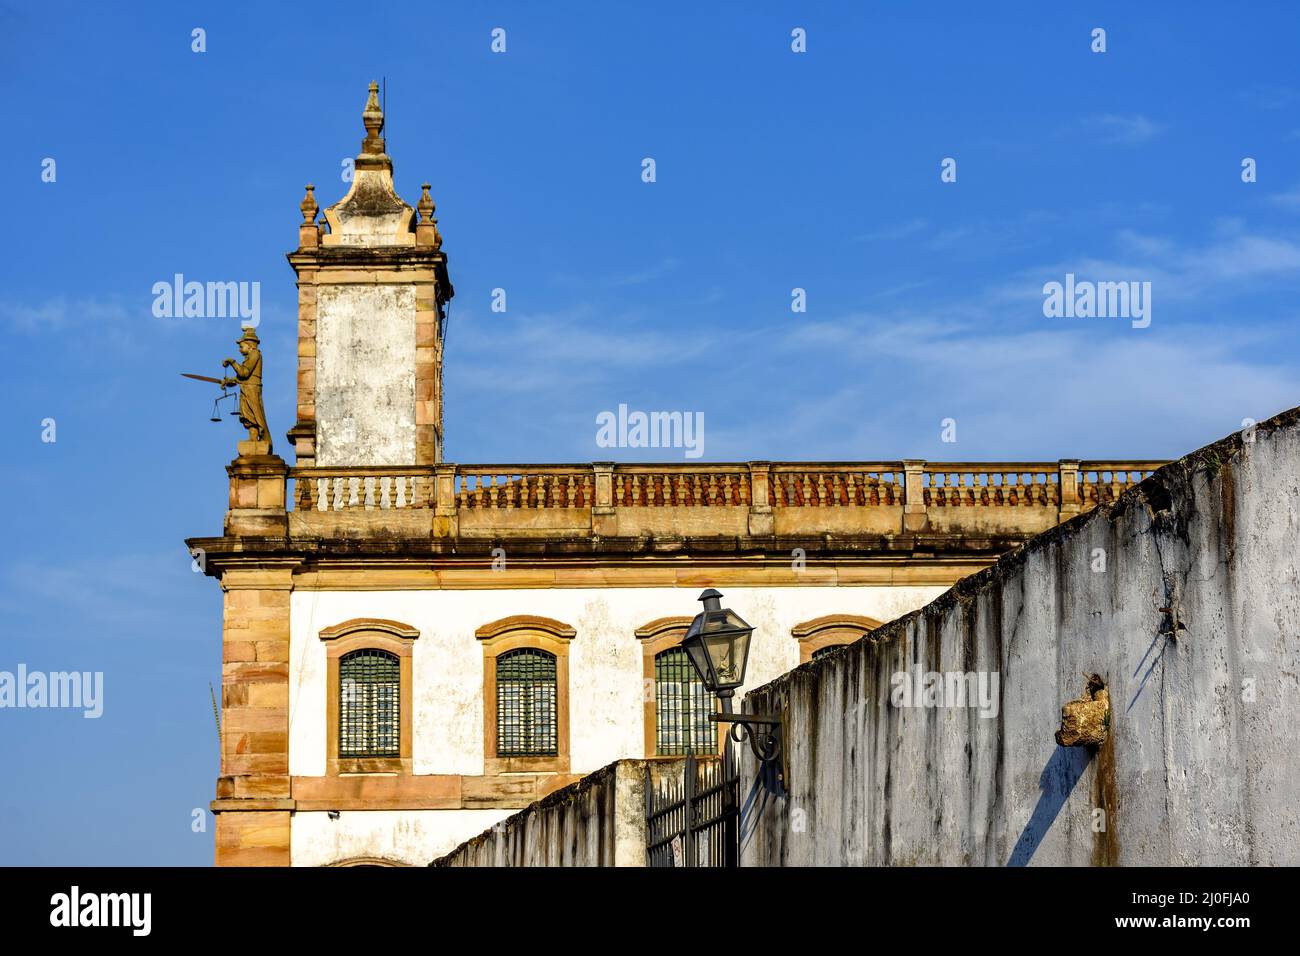 18th Century baroque colonial brazilian architecture Stock Photo